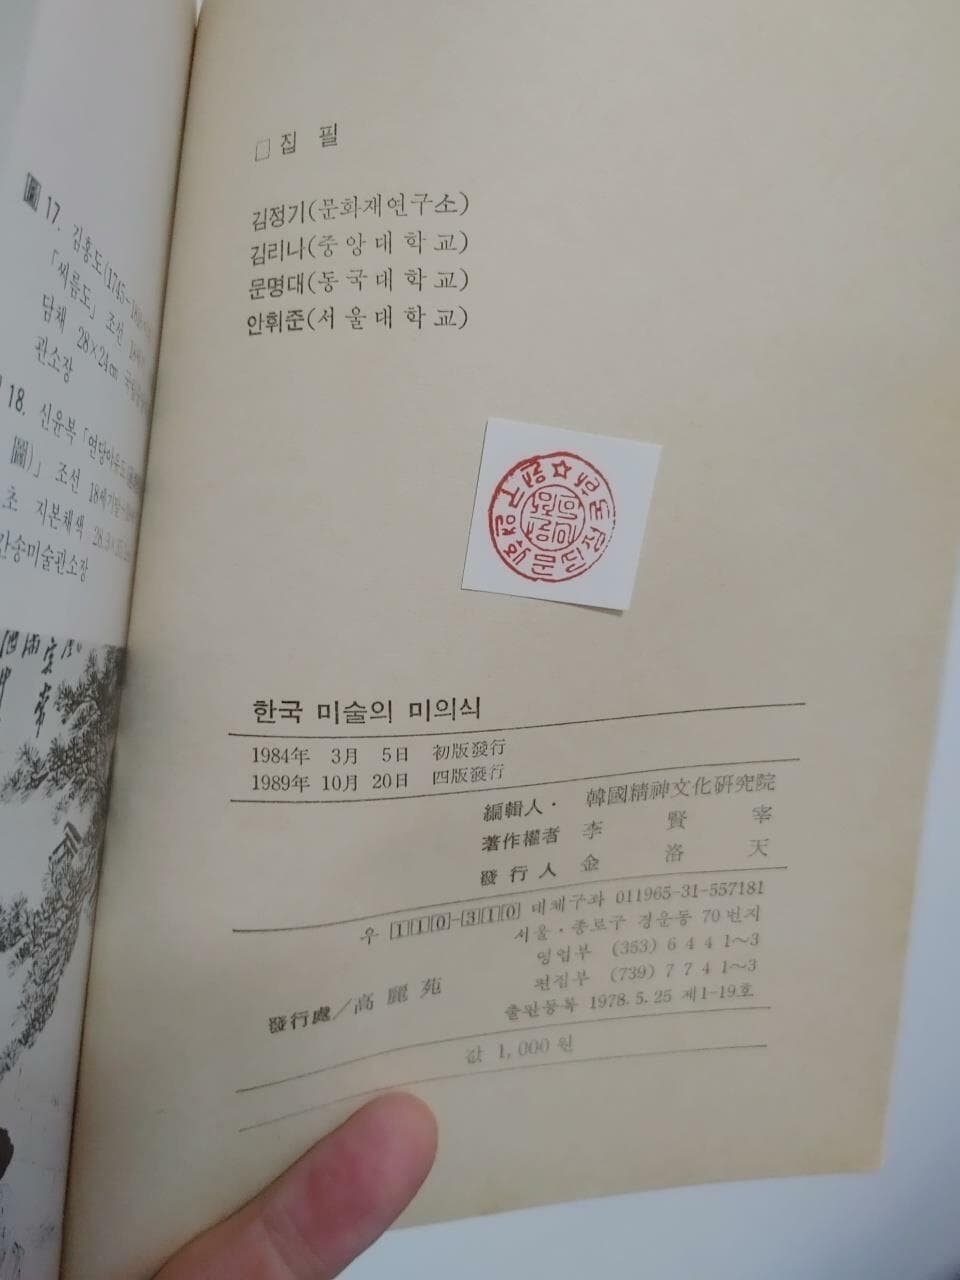 한국 미술의 미의식(정신문화문고 3) | 한국정신문화연구원 편 지음 | 고려원 | 1989